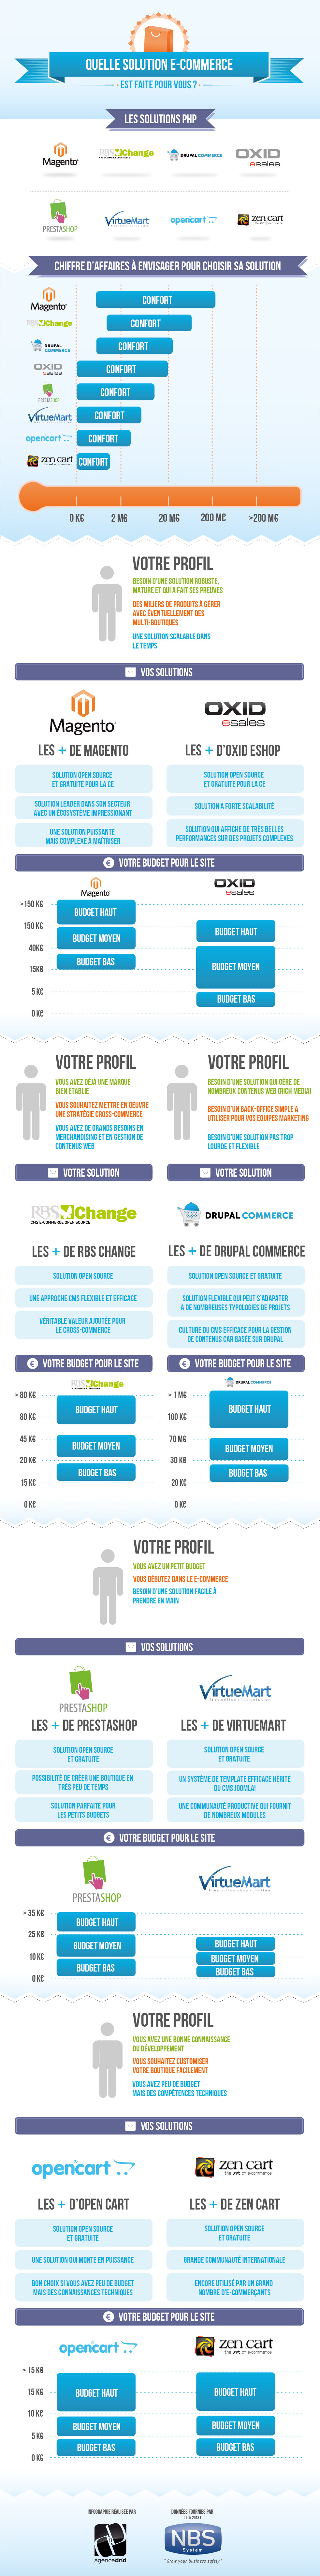 Infographie-CMS-ecommerce-quelles-differences